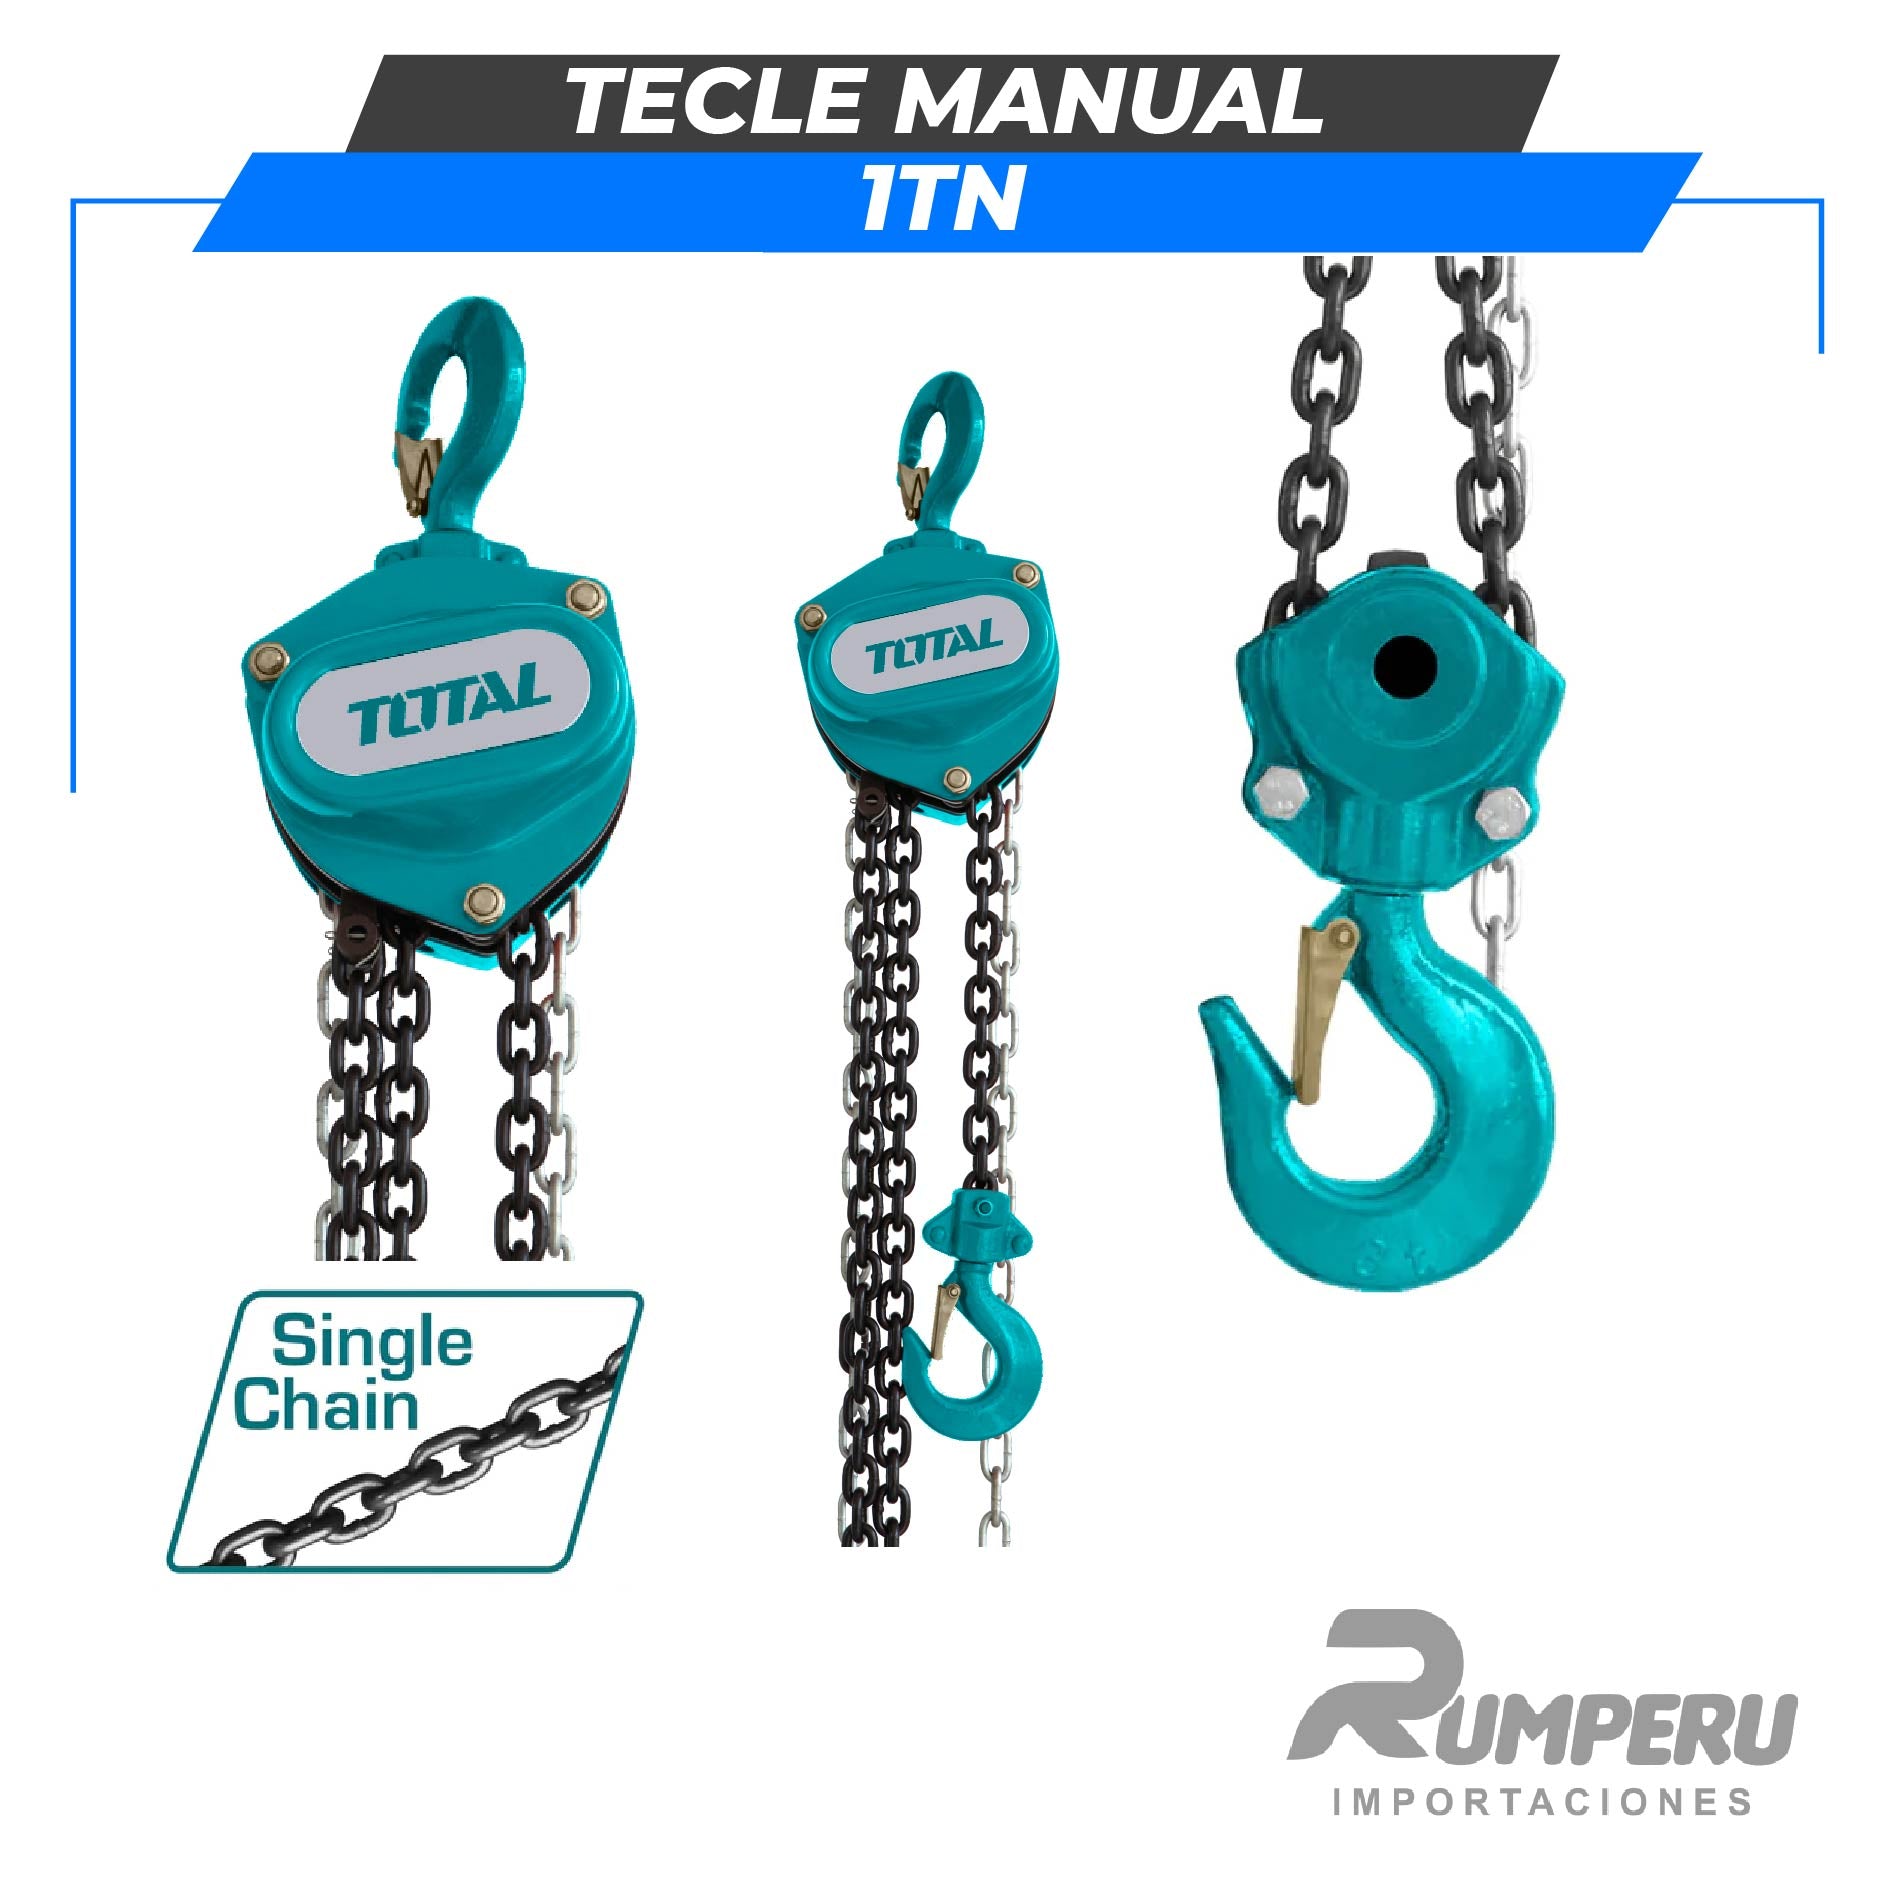 Tecle Manual 1 Tn